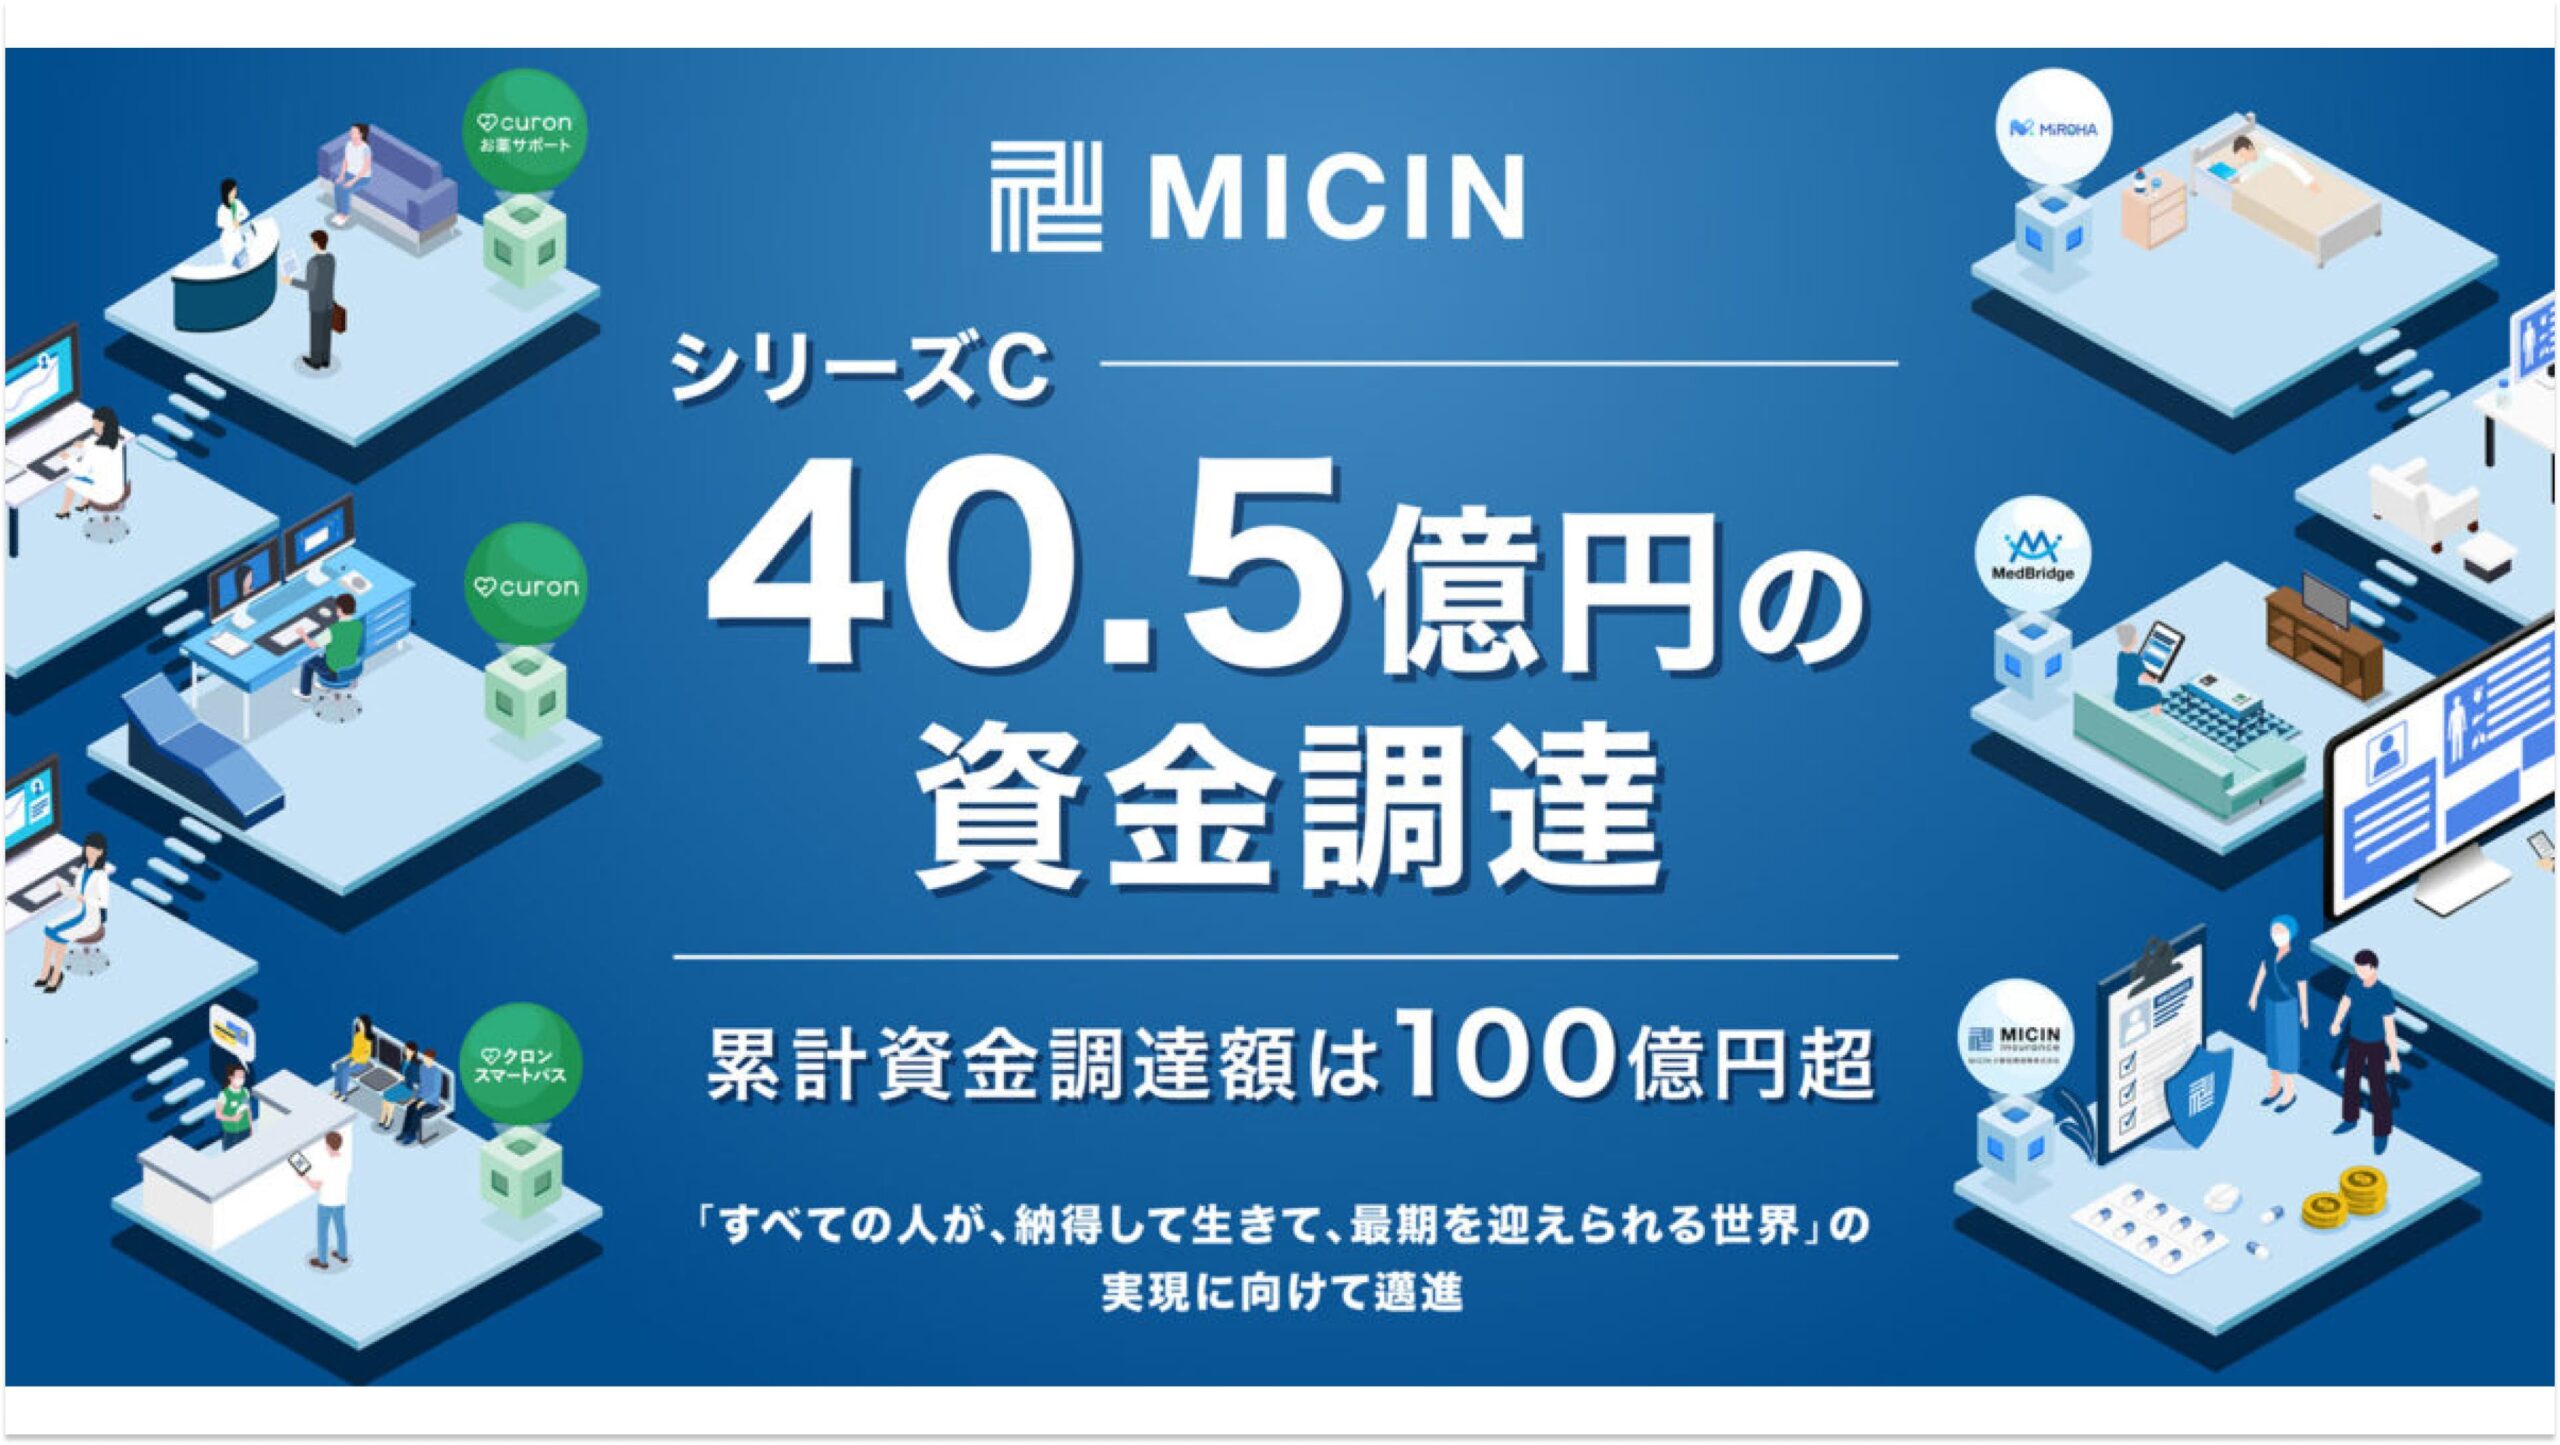 株式会社MICIN、シリーズCにて40.5億円の資金調達ー累計調達額は100億超に